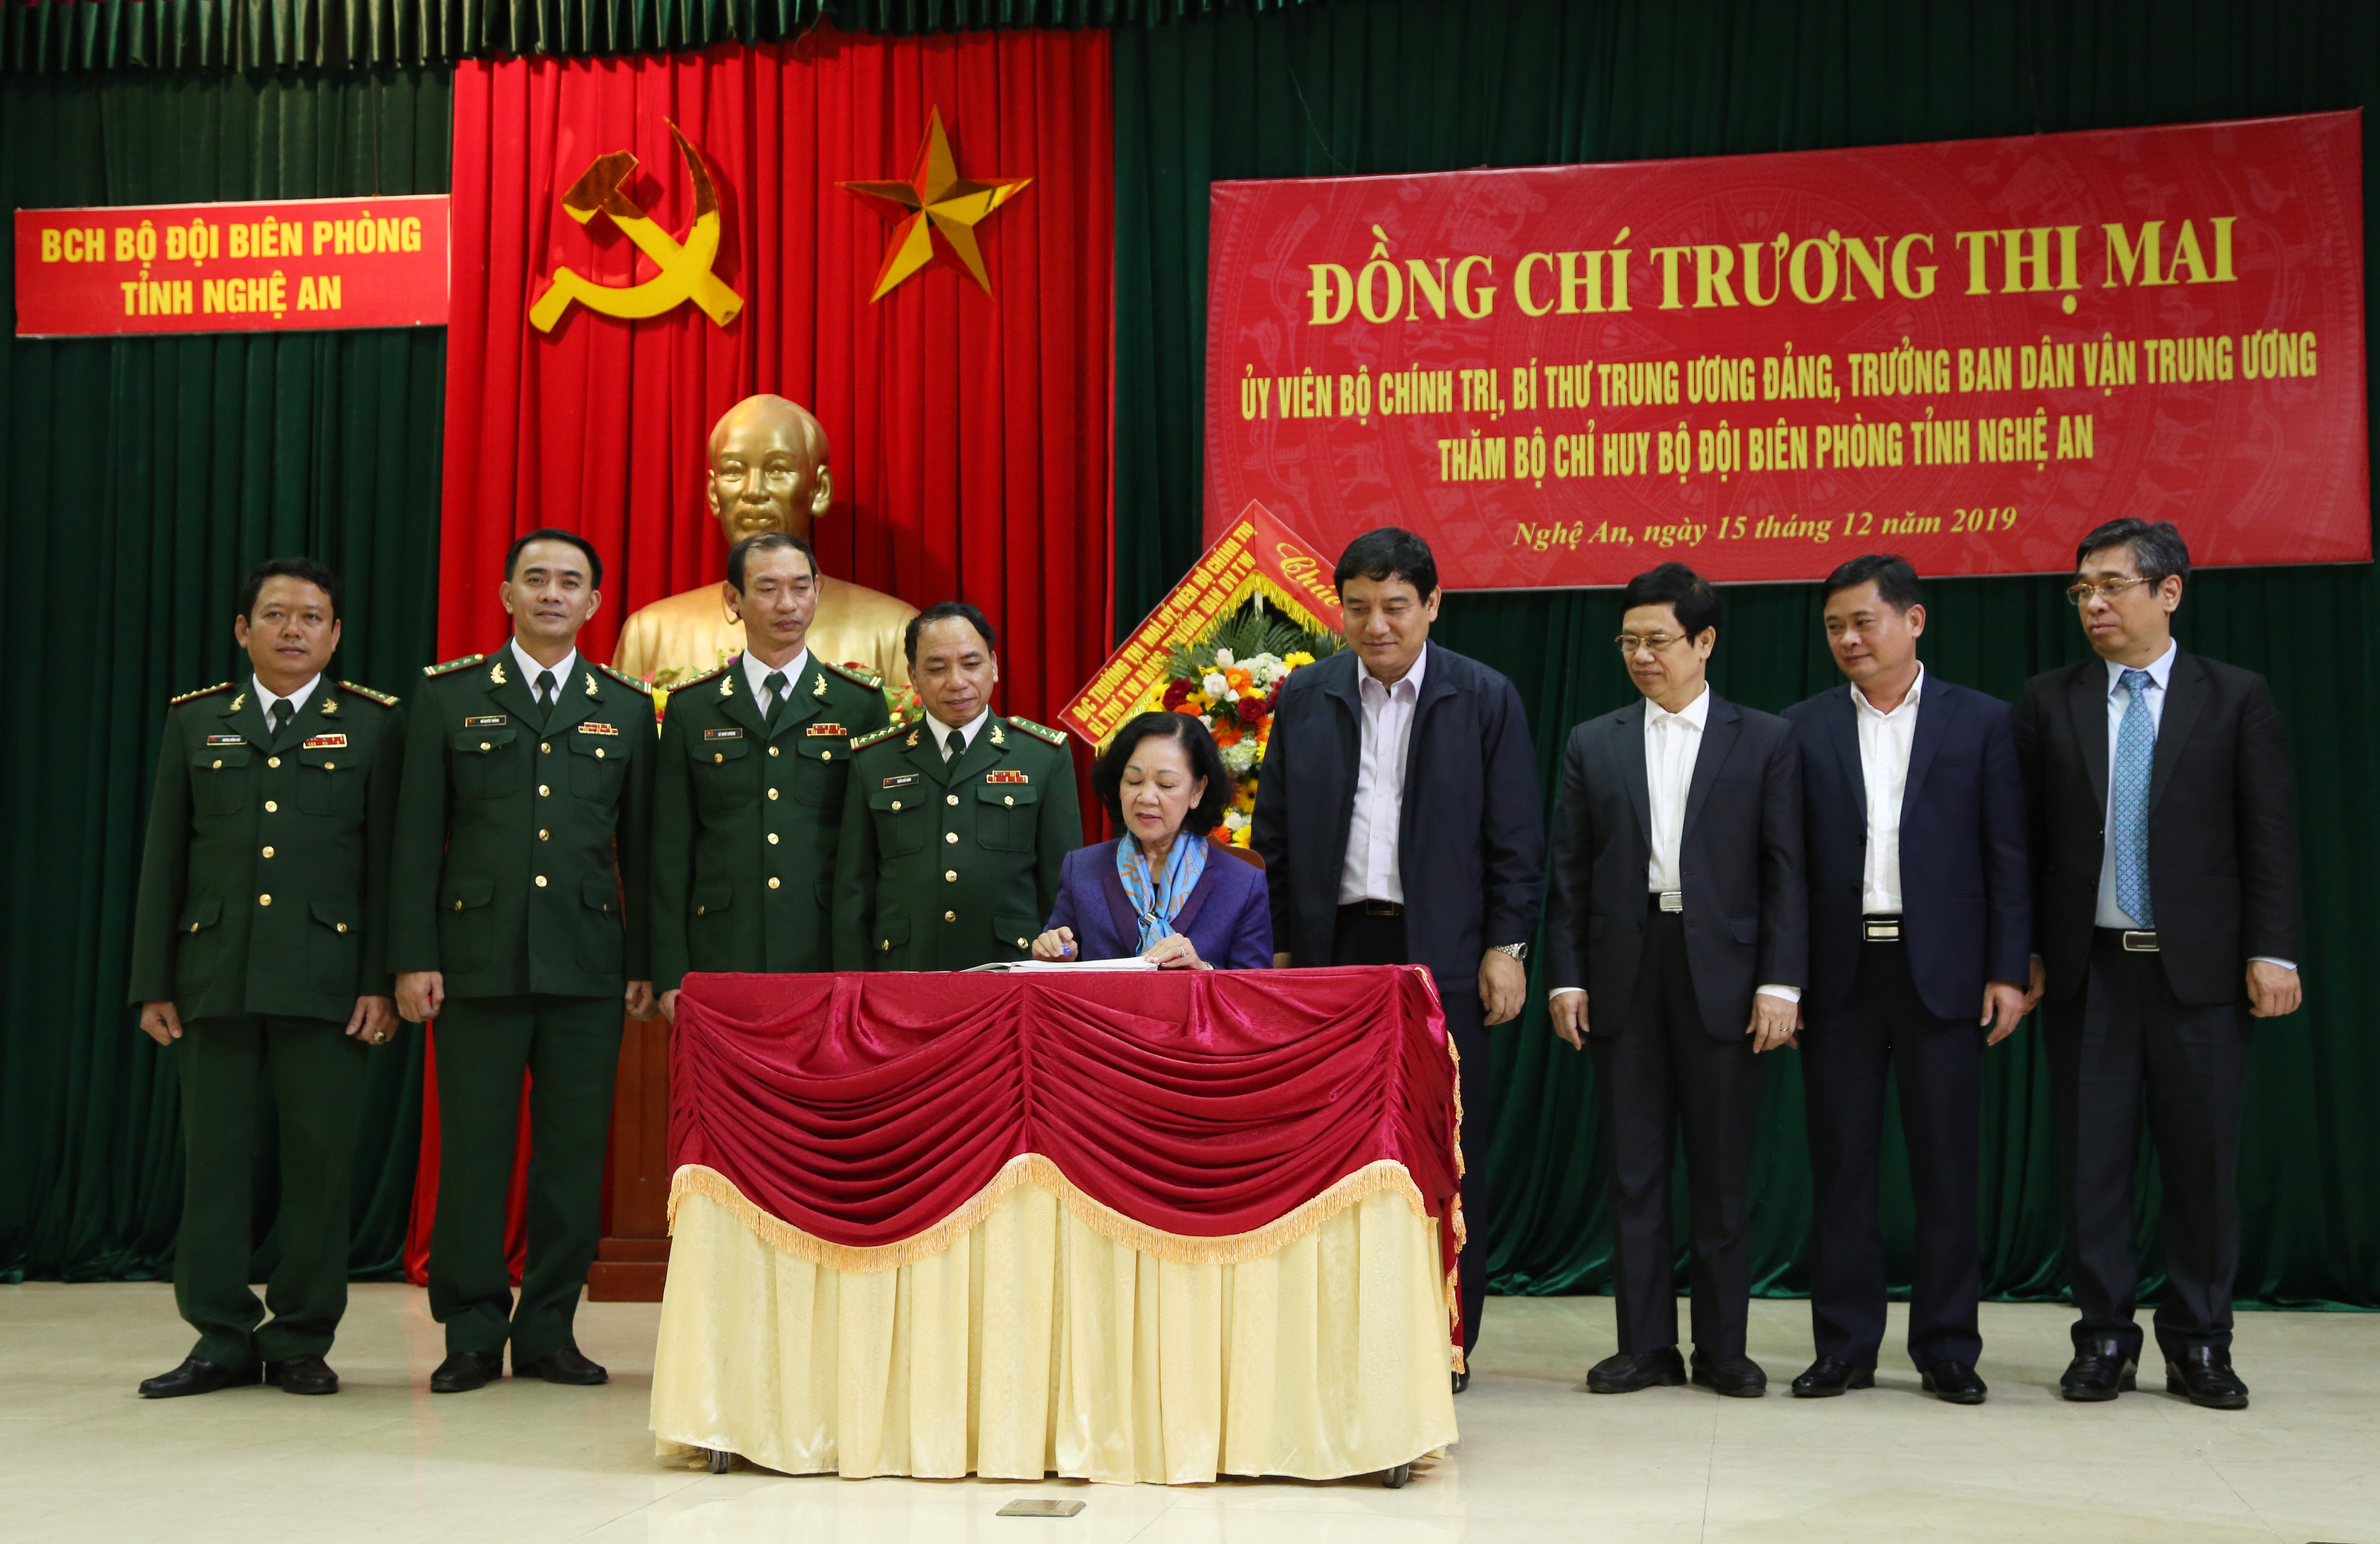 Đồng chí Trương Thị Mai ghi vào sổ lưu niệm nhân dịp tới thăm, làm việc với BĐBP tỉnh Nghệ An. Ảnh: Đào Tuấn 